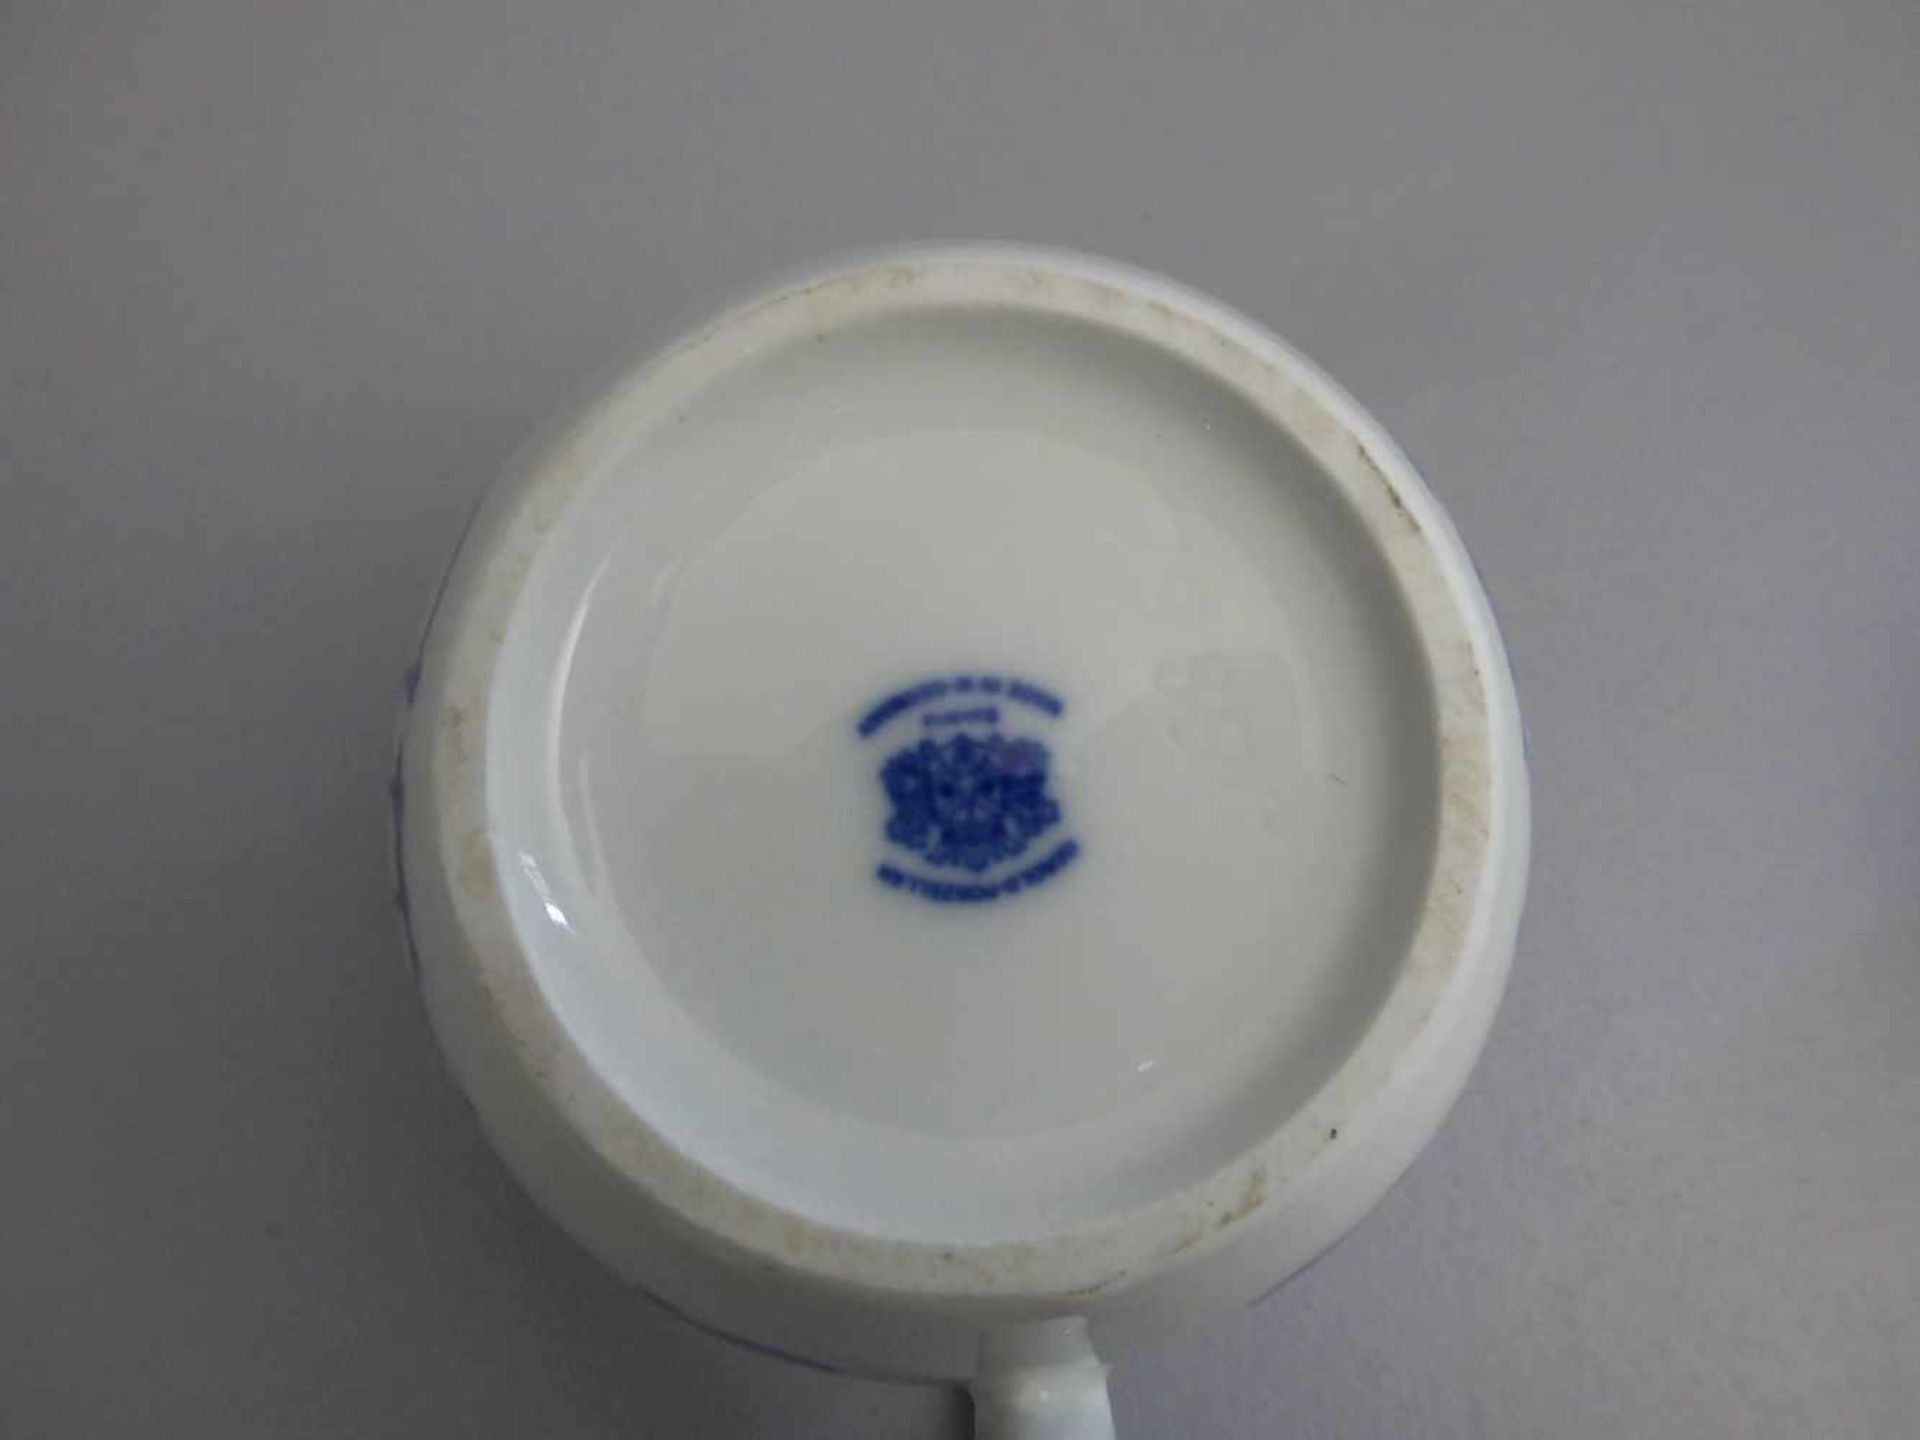 PAAR KANNEN, Porzellan, Gerold-Porzellan, Tettau, gebauchte Form mit Ohrenhenkel, blaue Staffage, - Bild 4 aus 4